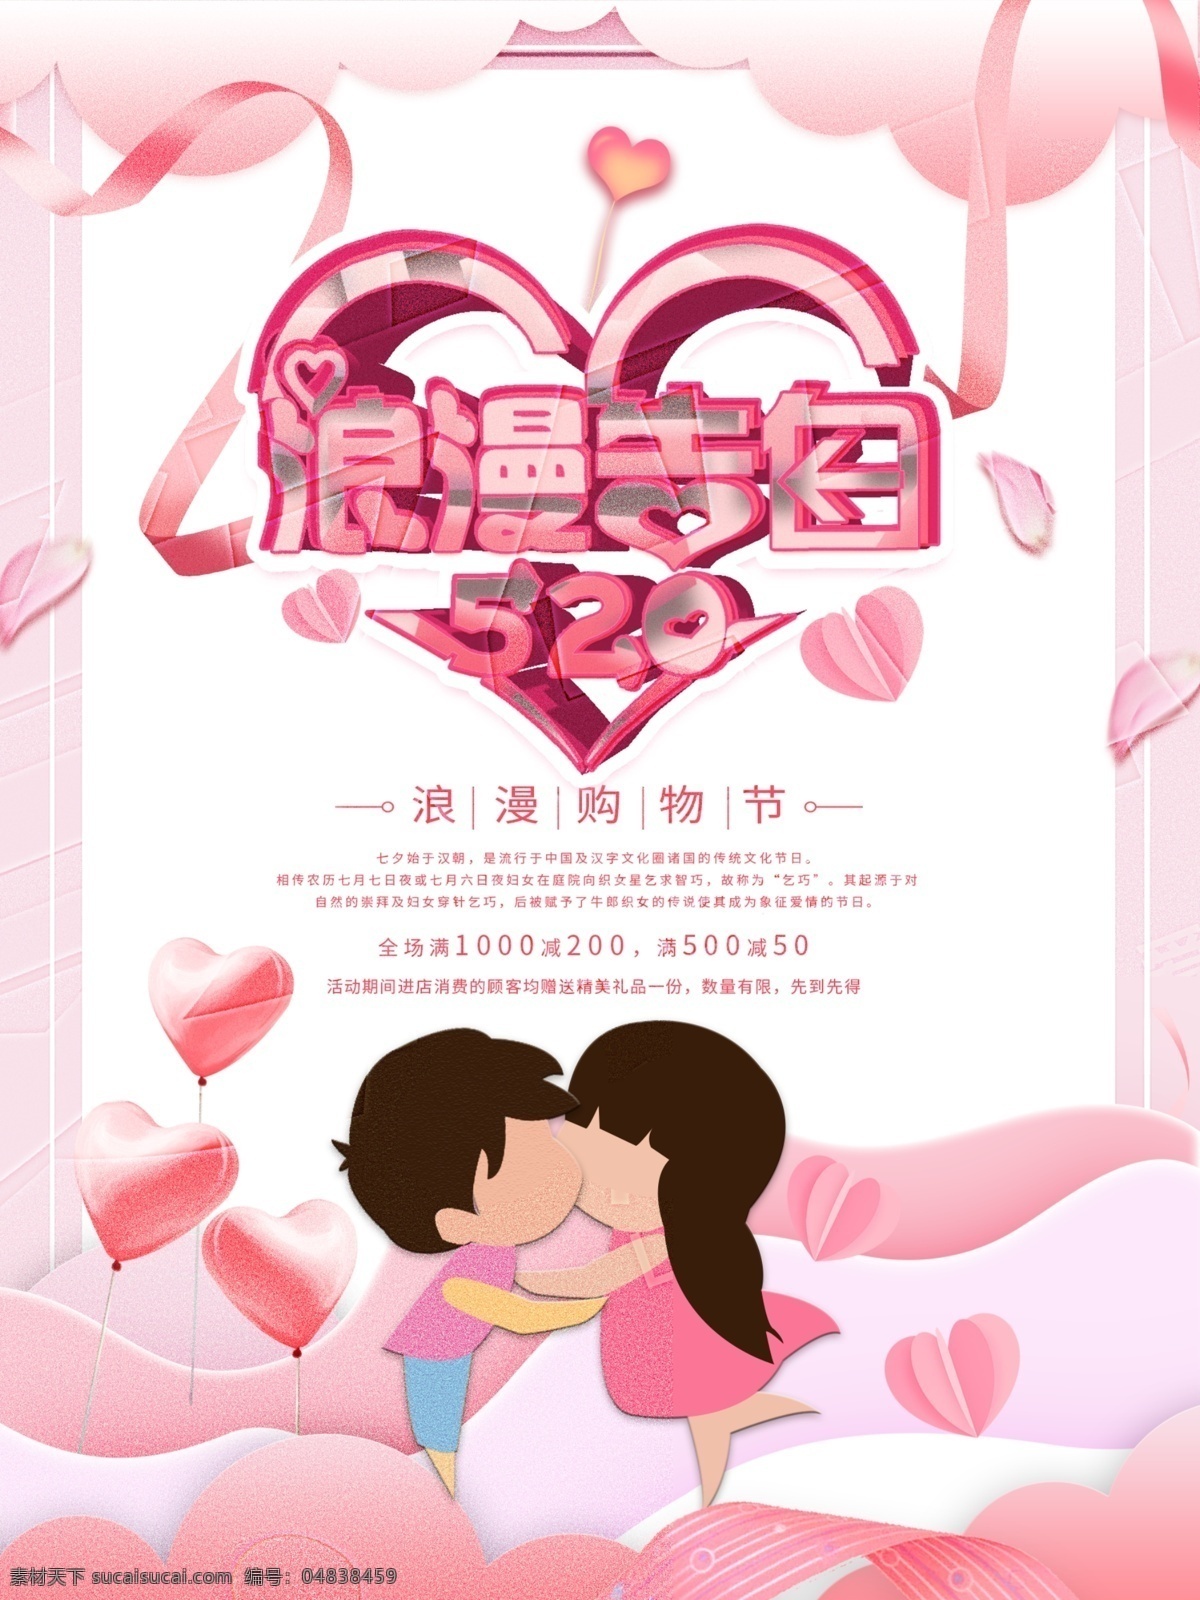 原创 情人节 浪漫 促销 海报 520 粉色 情侣 手绘 唯美